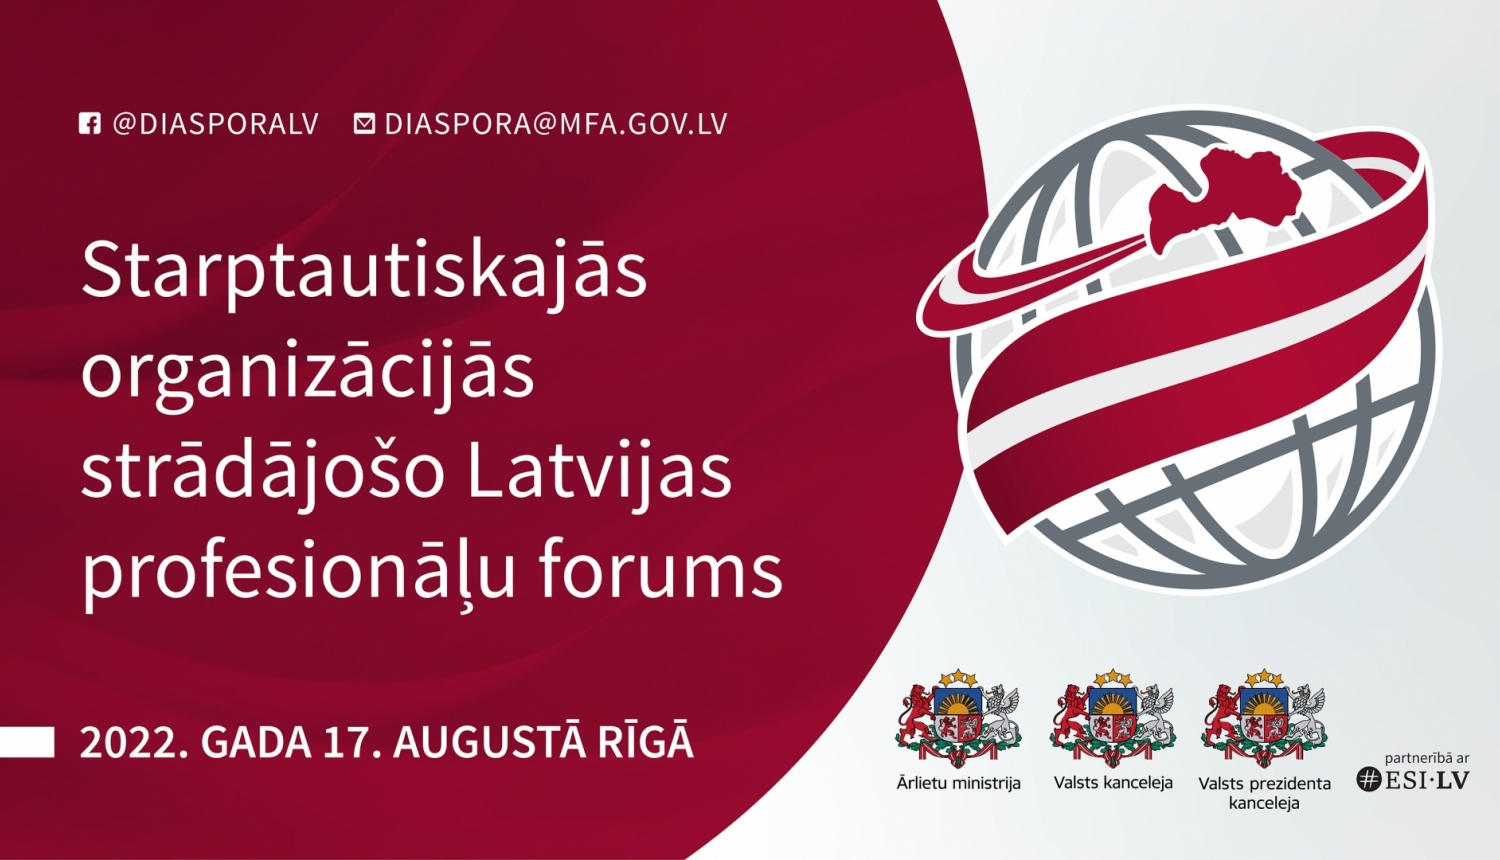 Starptautiskajās organizācijās strādājošo Latvijas profesionāļu forums 